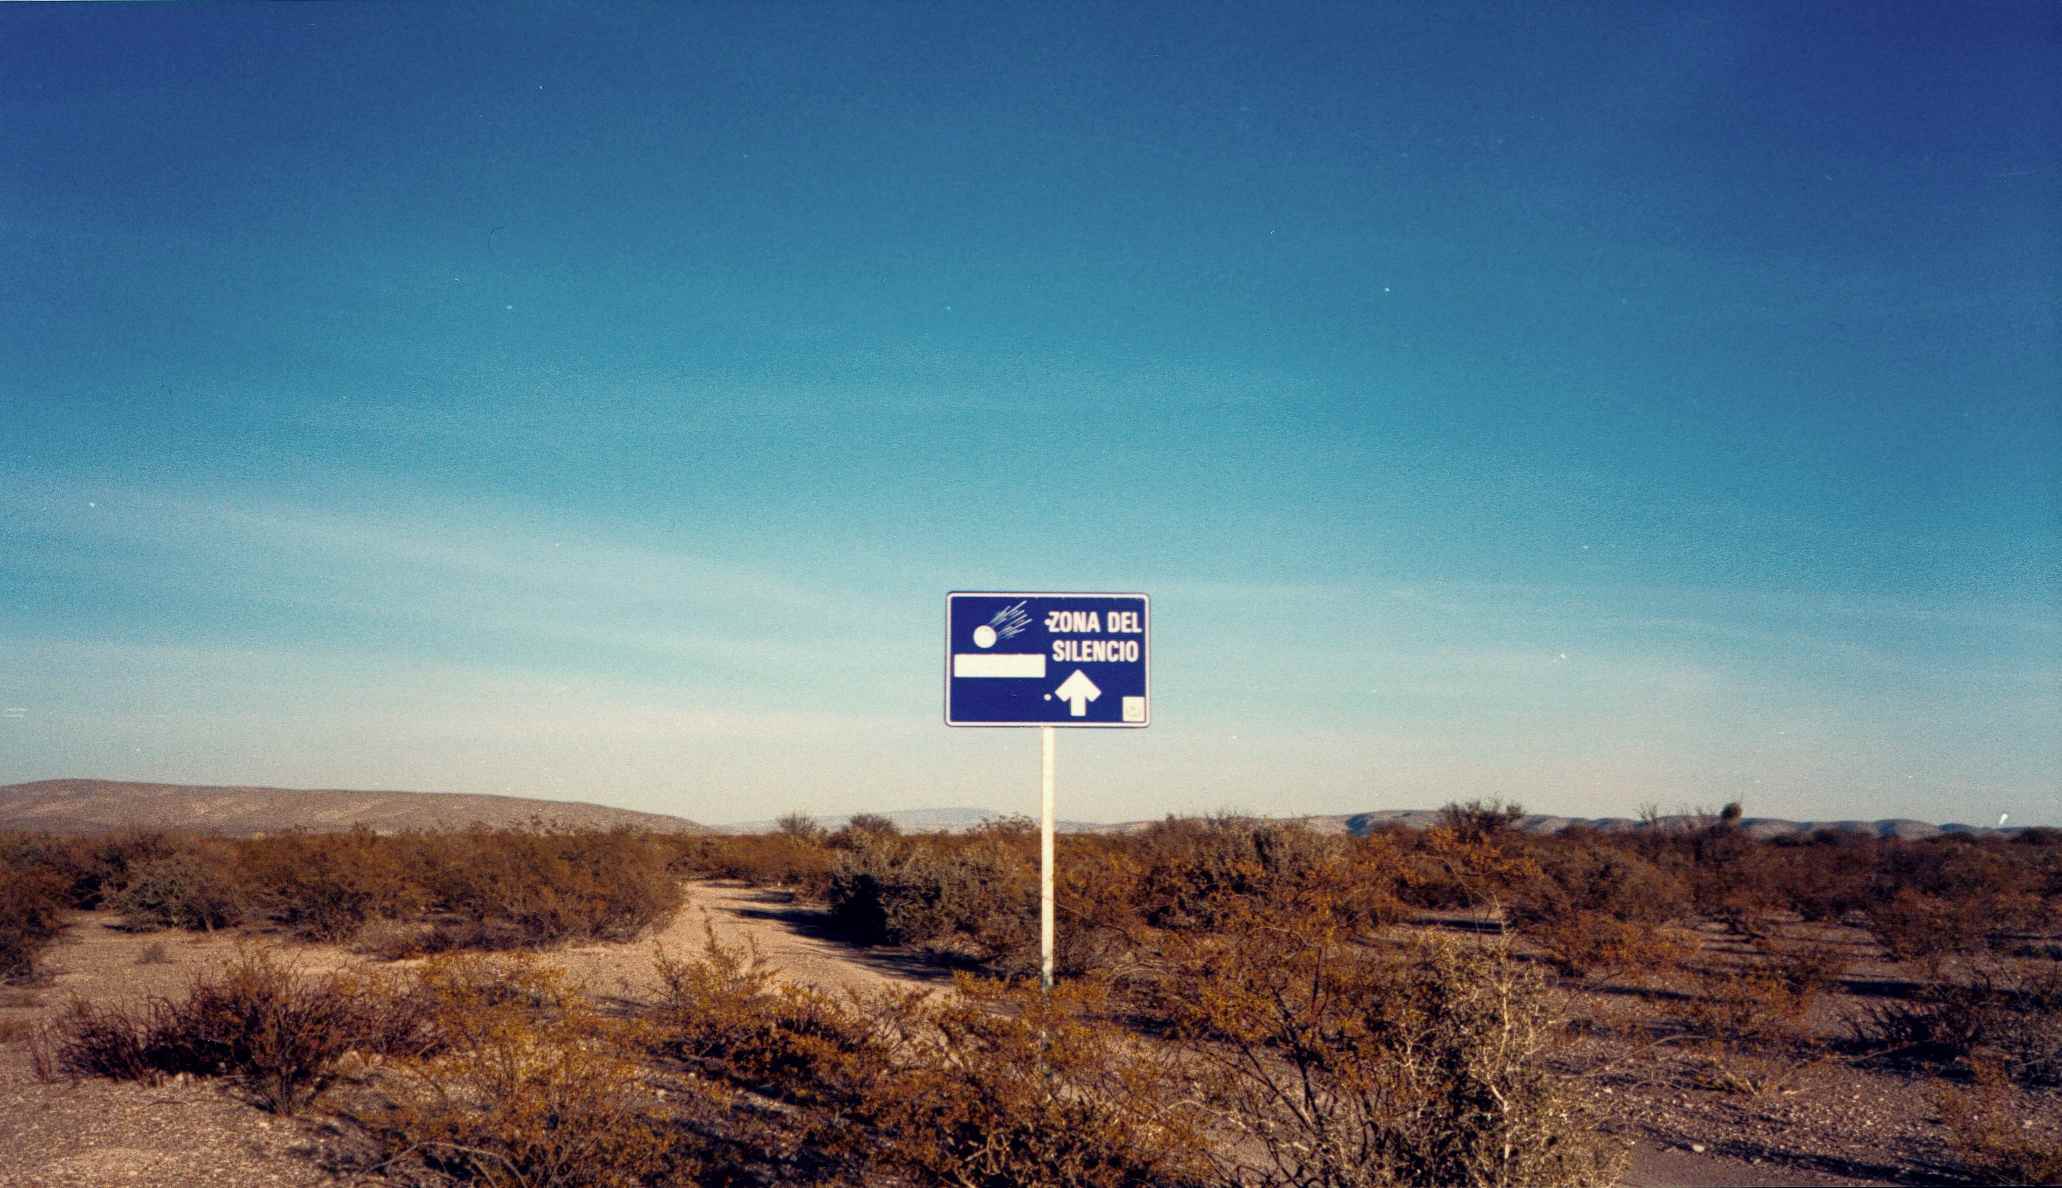 Zone Of Silence, Zona del Silencio, Chihuahua Desert, North Mexico